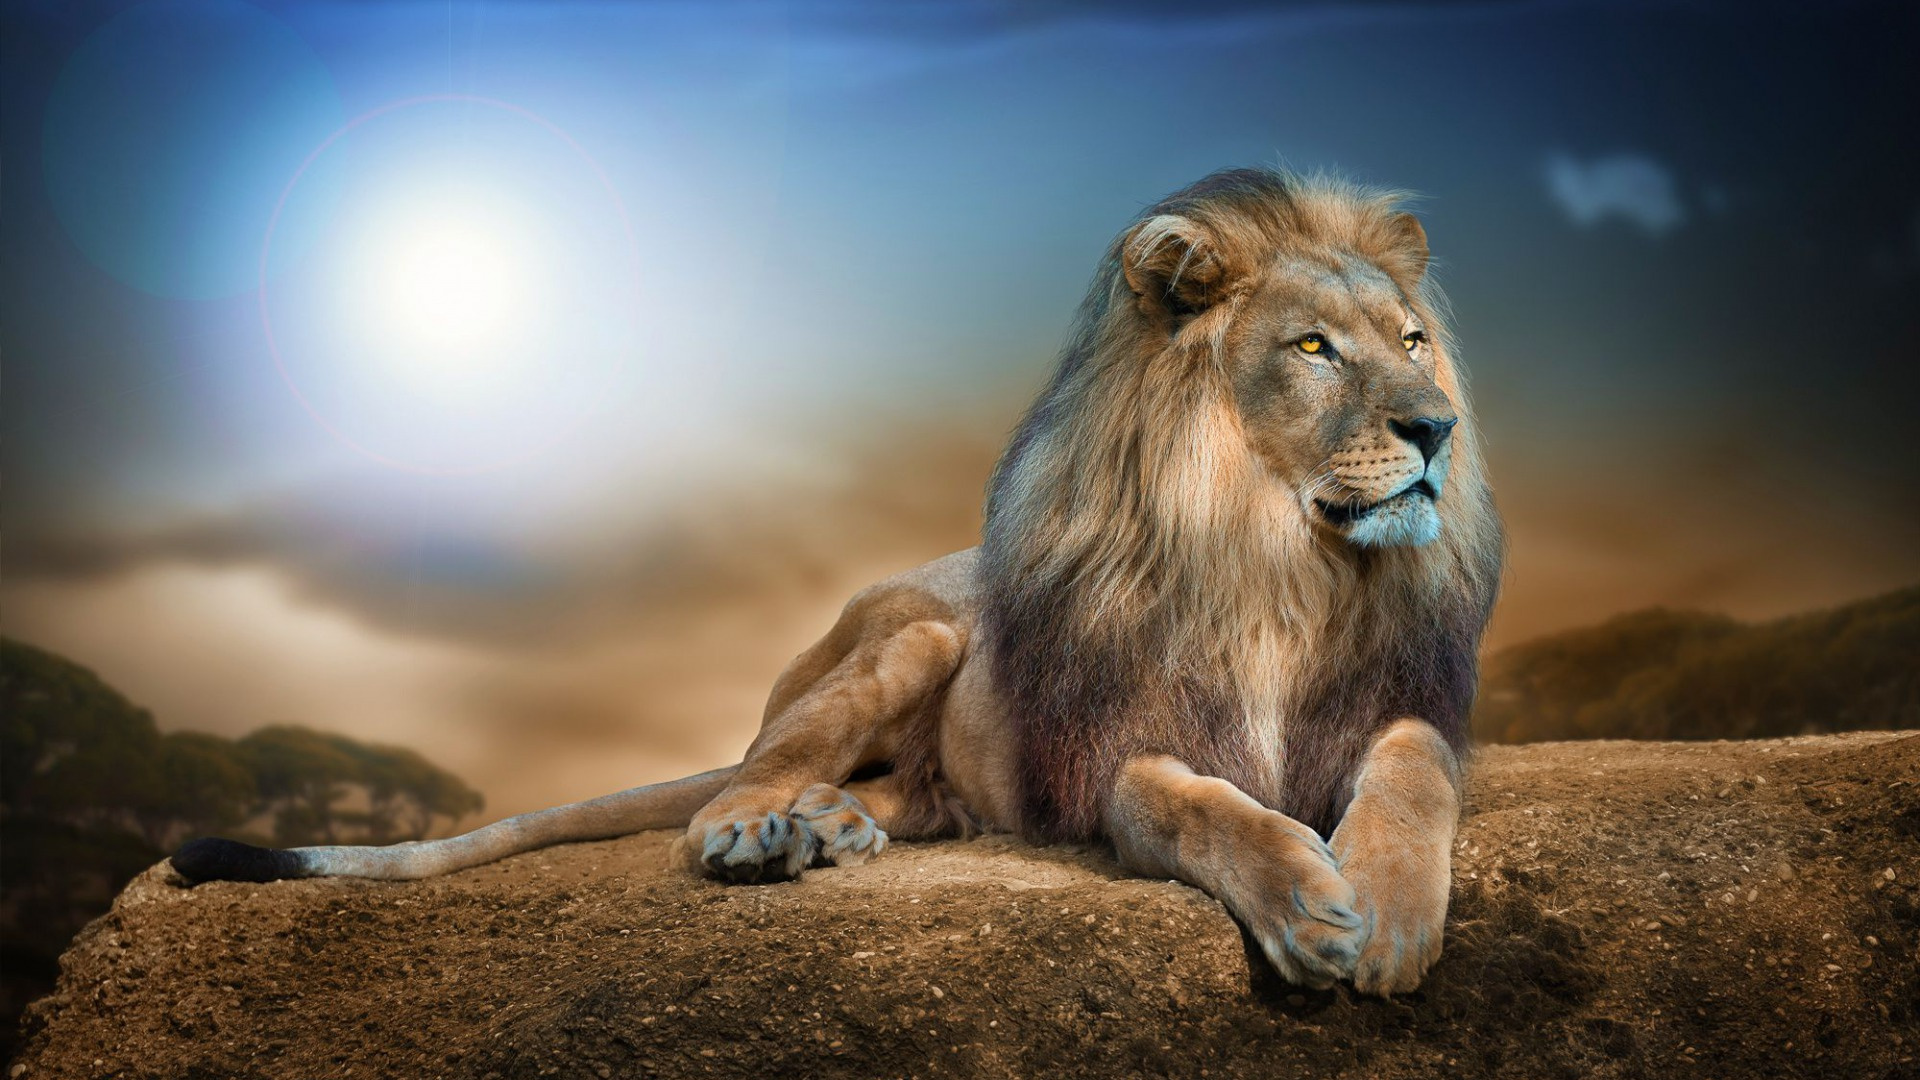 Lion Allongé Sur un Sol Brun Pendant la Journée. Wallpaper in 1920x1080 Resolution